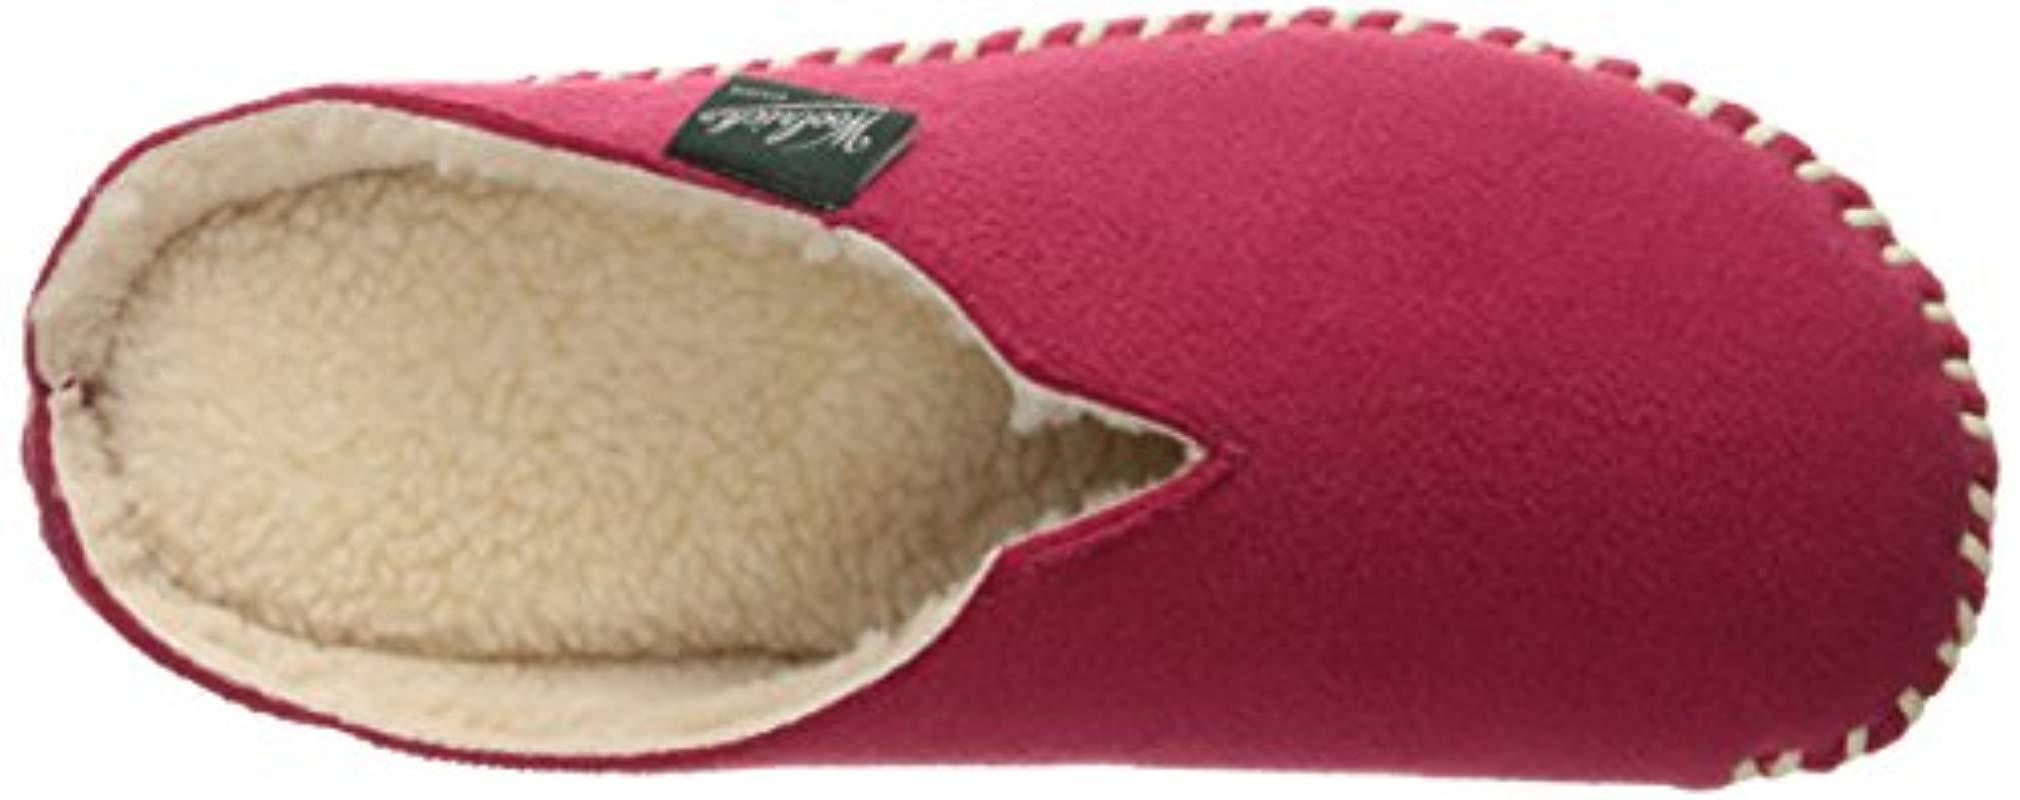 woolrich fleece mill scuff slippers